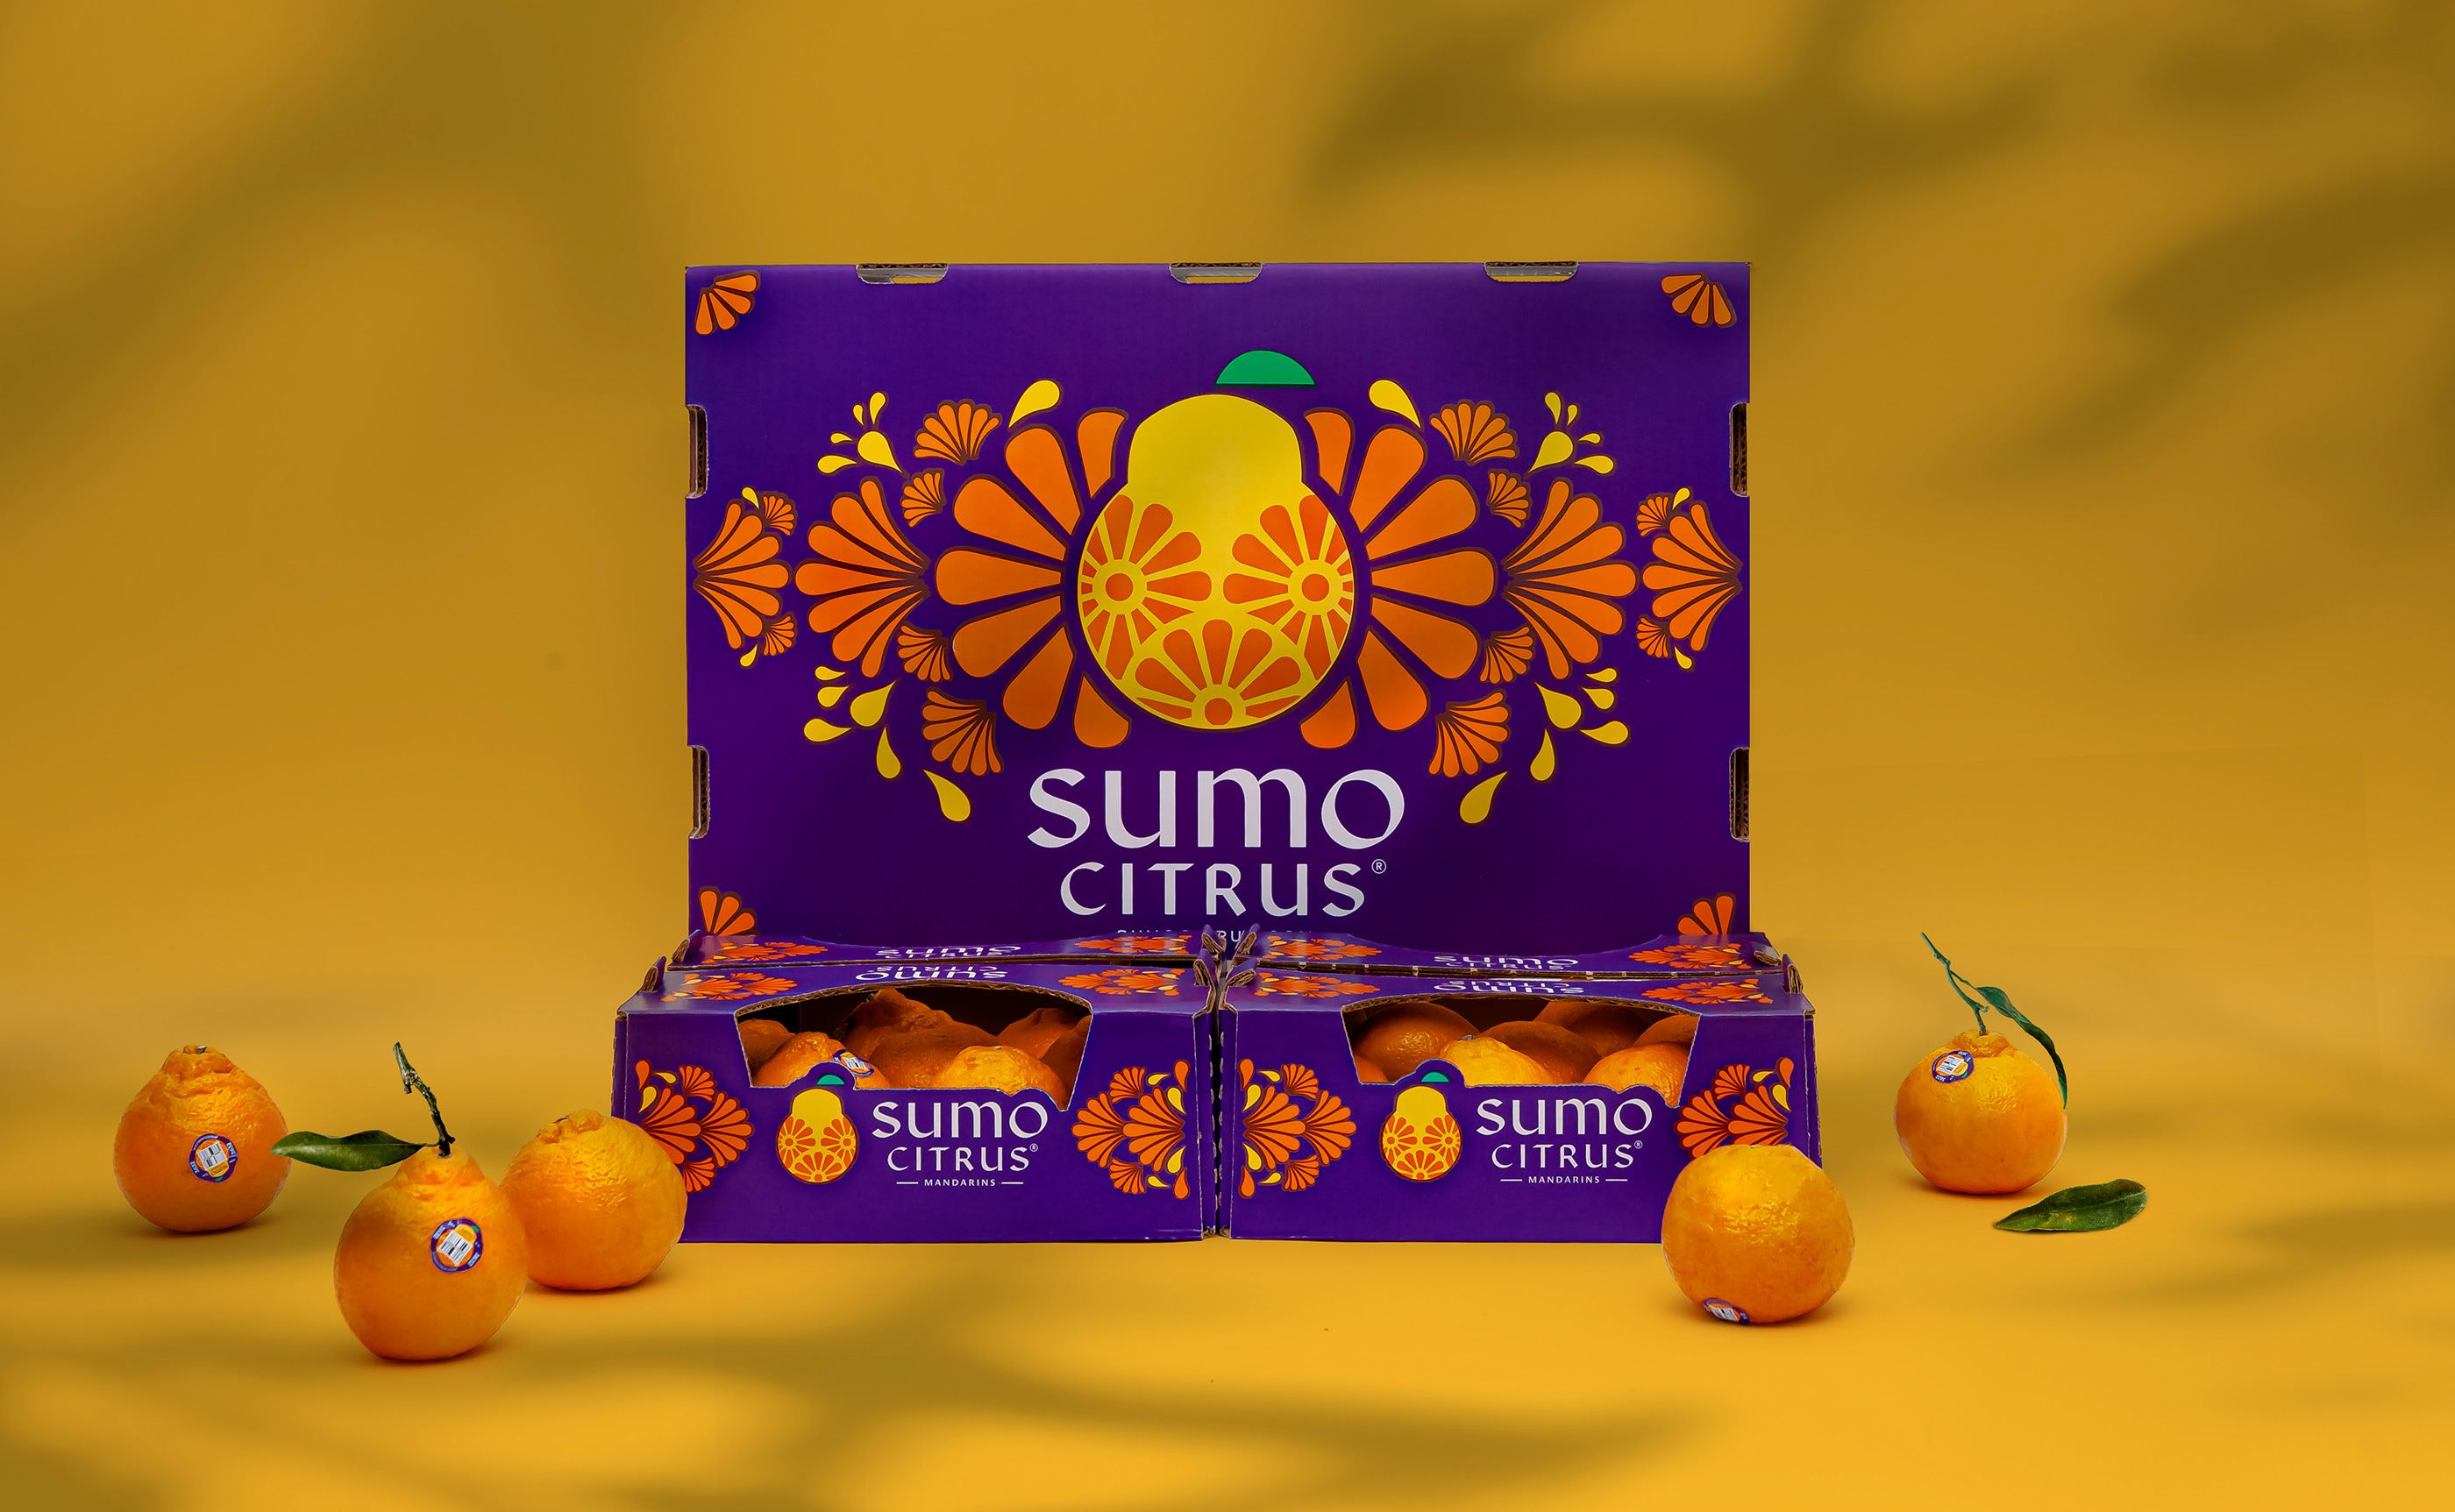 外国柑橘包装设计 柑橘包装设计哪家好 柑橘包装设计公司 第1张